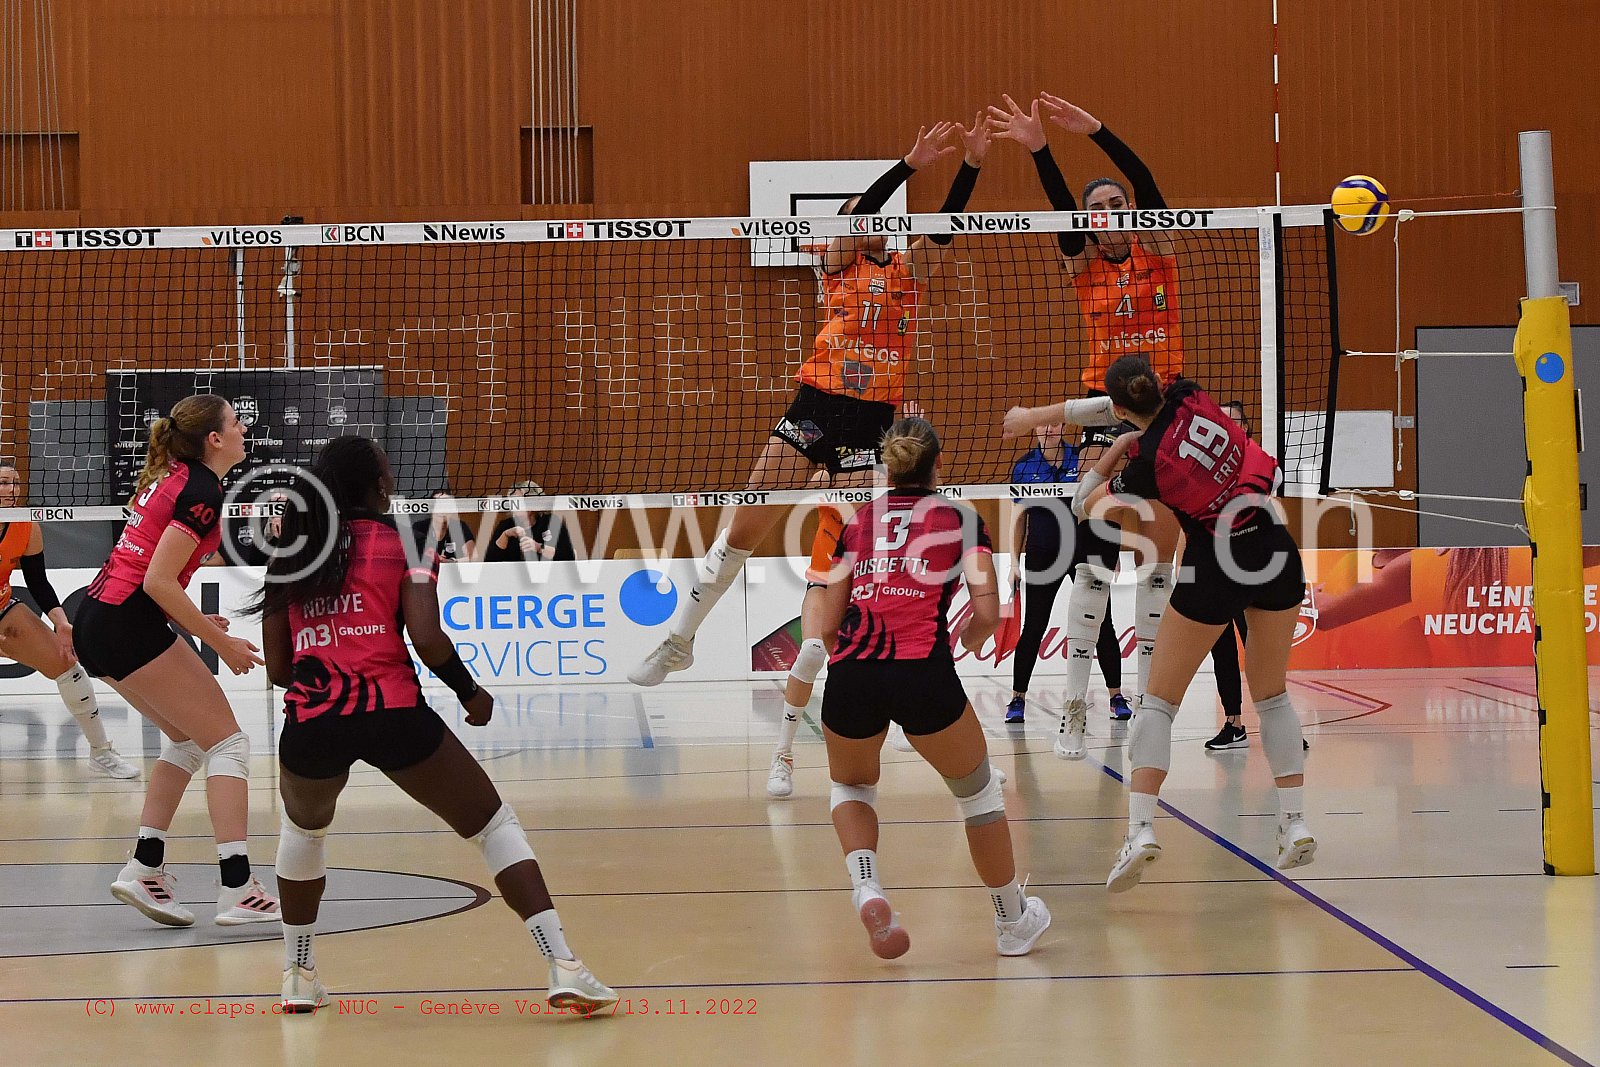 20221113 NUC - Geneve Volley